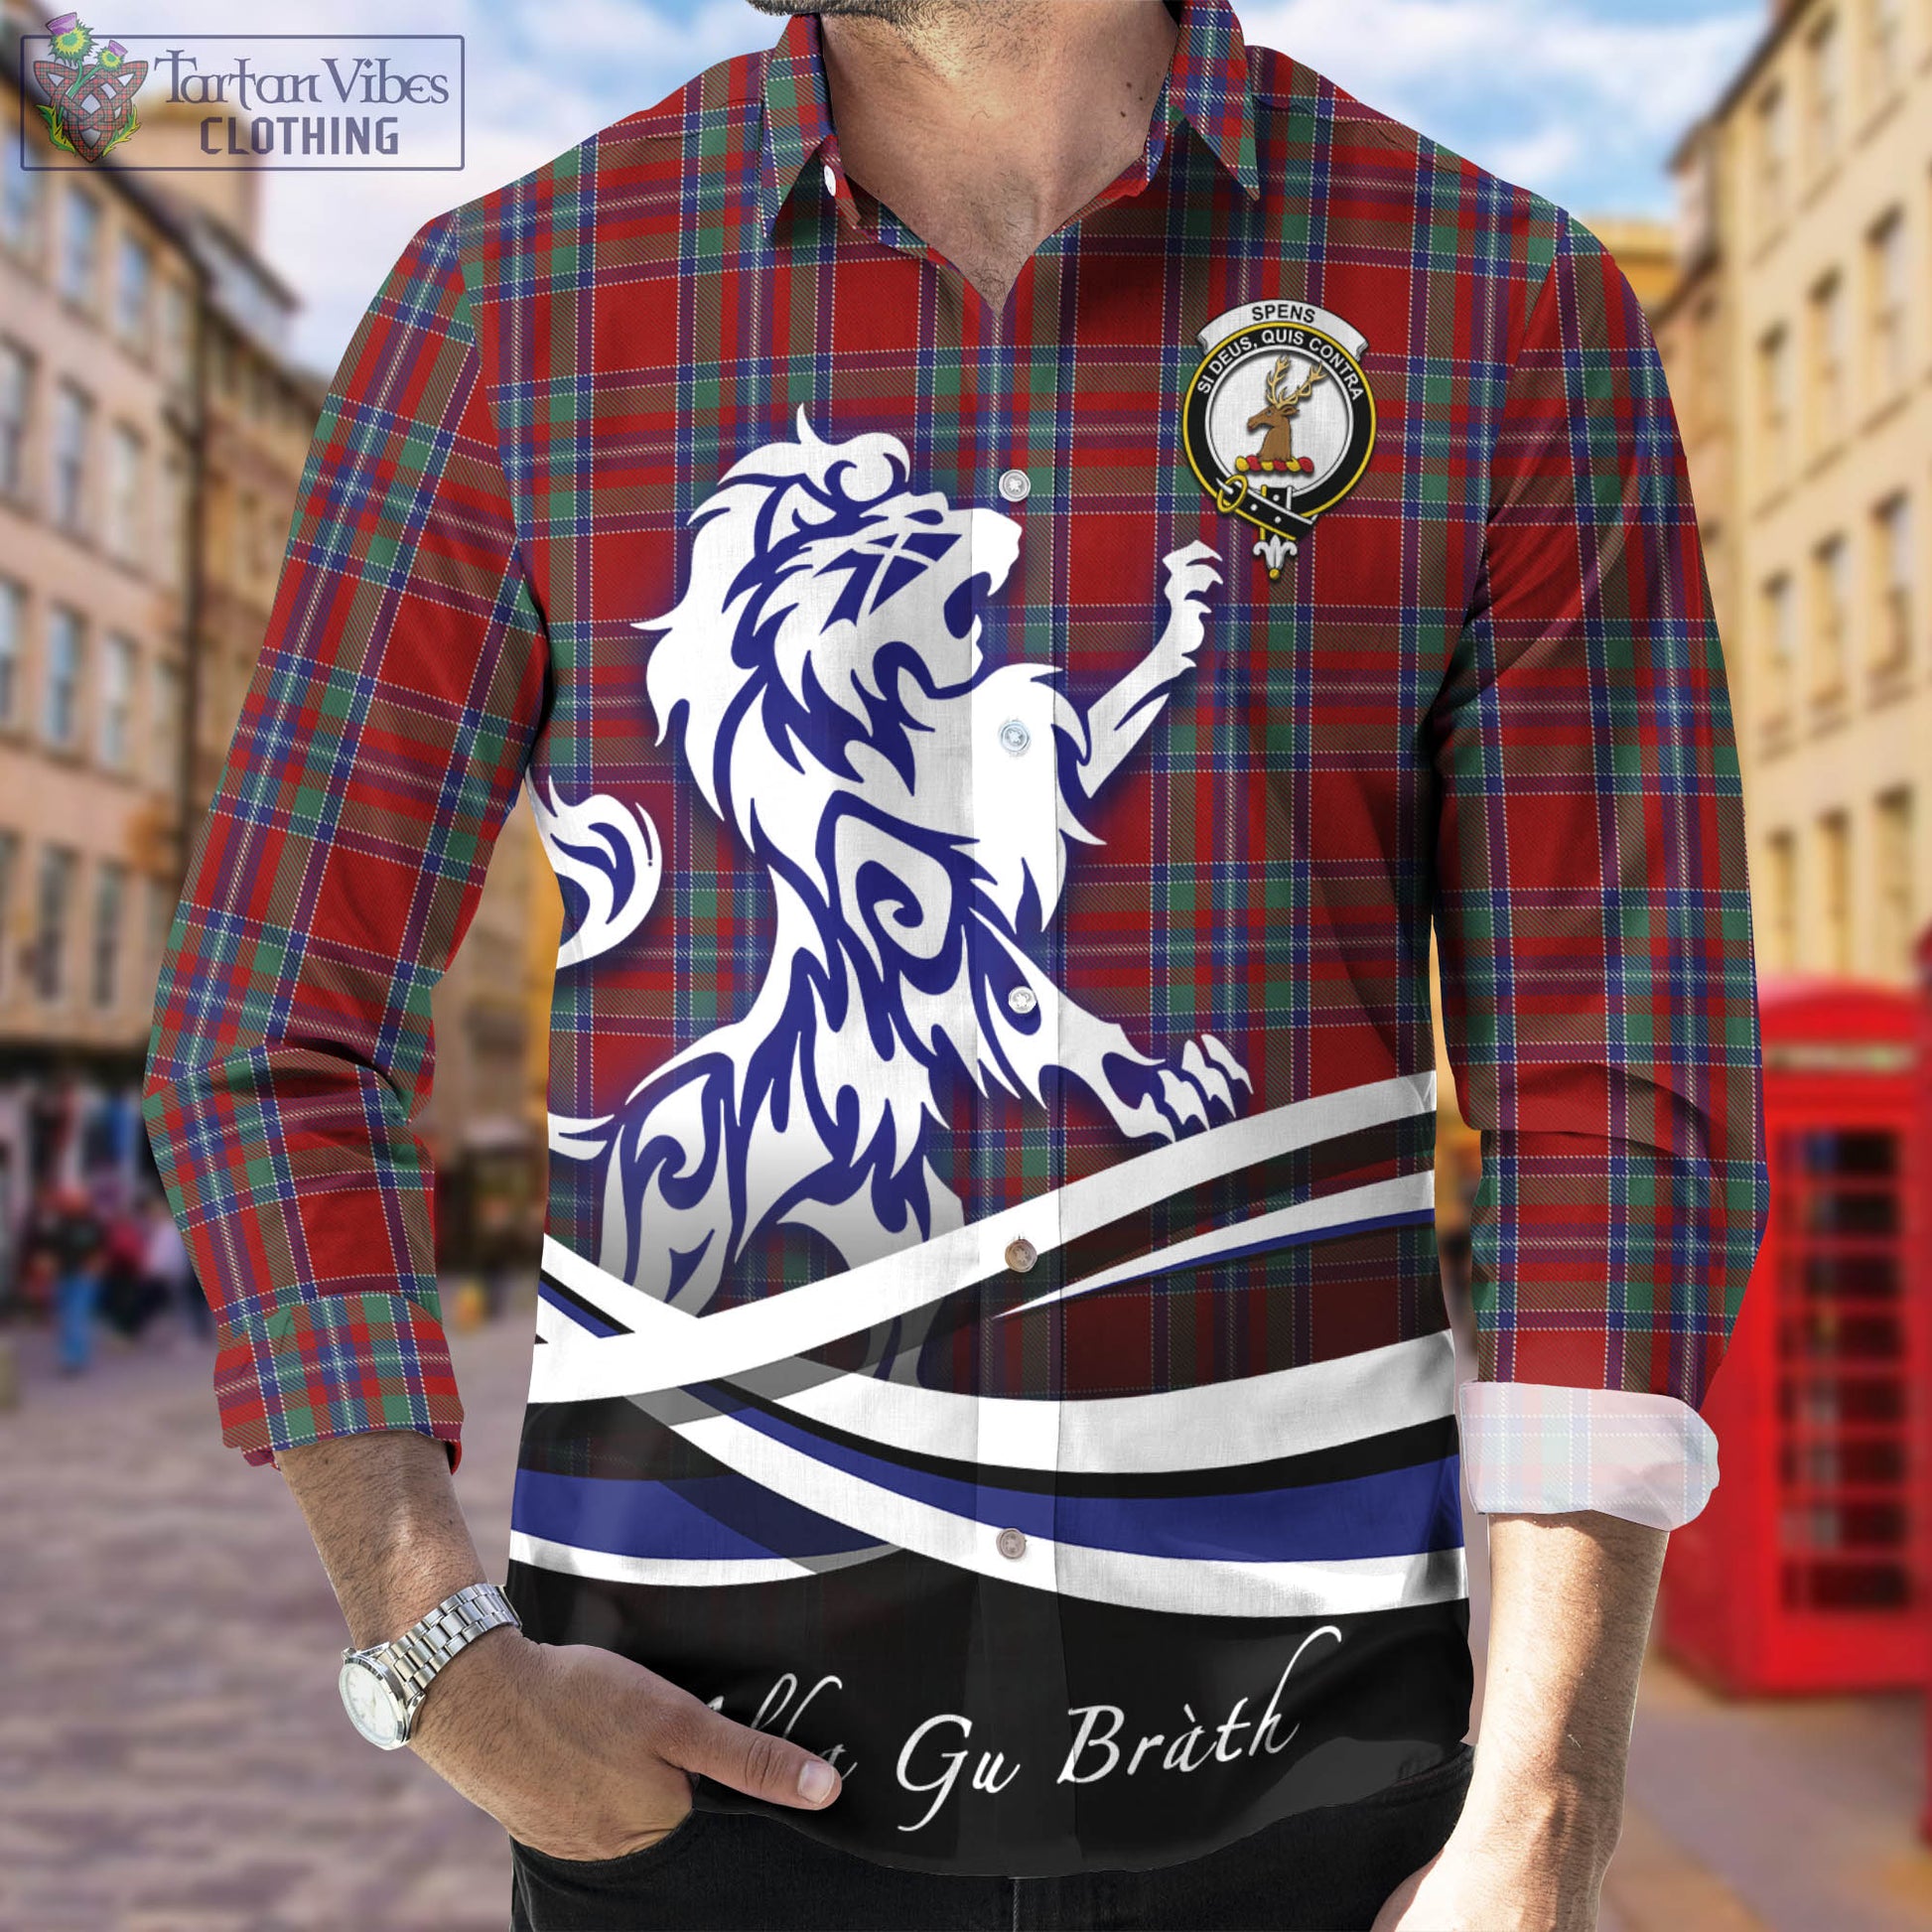 spens-tartan-long-sleeve-button-up-shirt-with-alba-gu-brath-regal-lion-emblem